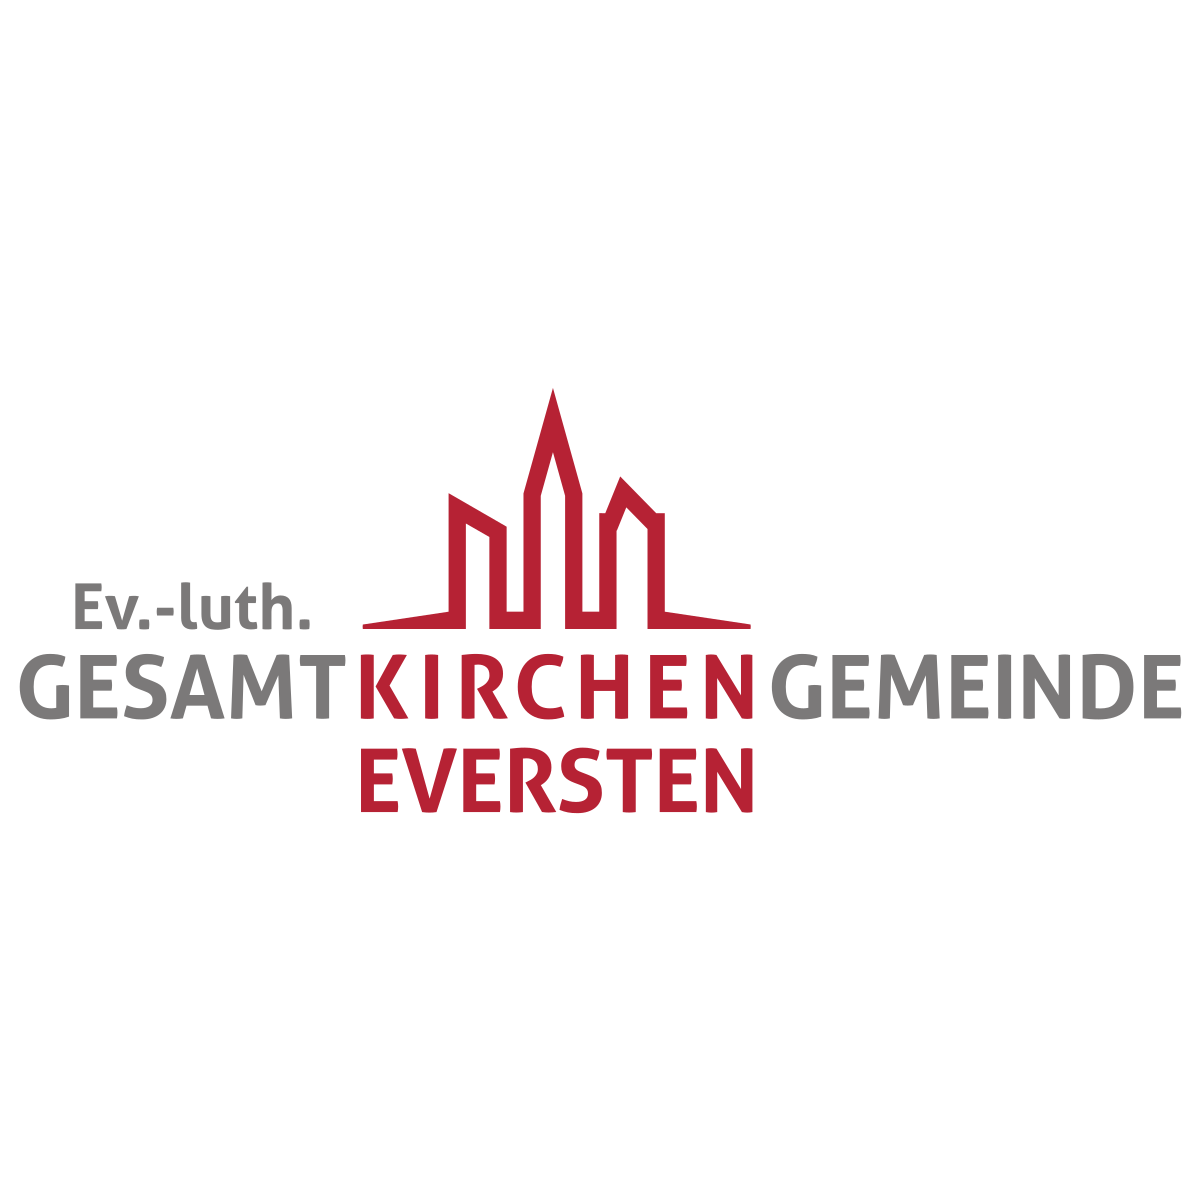 Kundenlogo Nikolaikirche - Evangelisch-lutherische Kirchengemeinde Nikolai Eversten